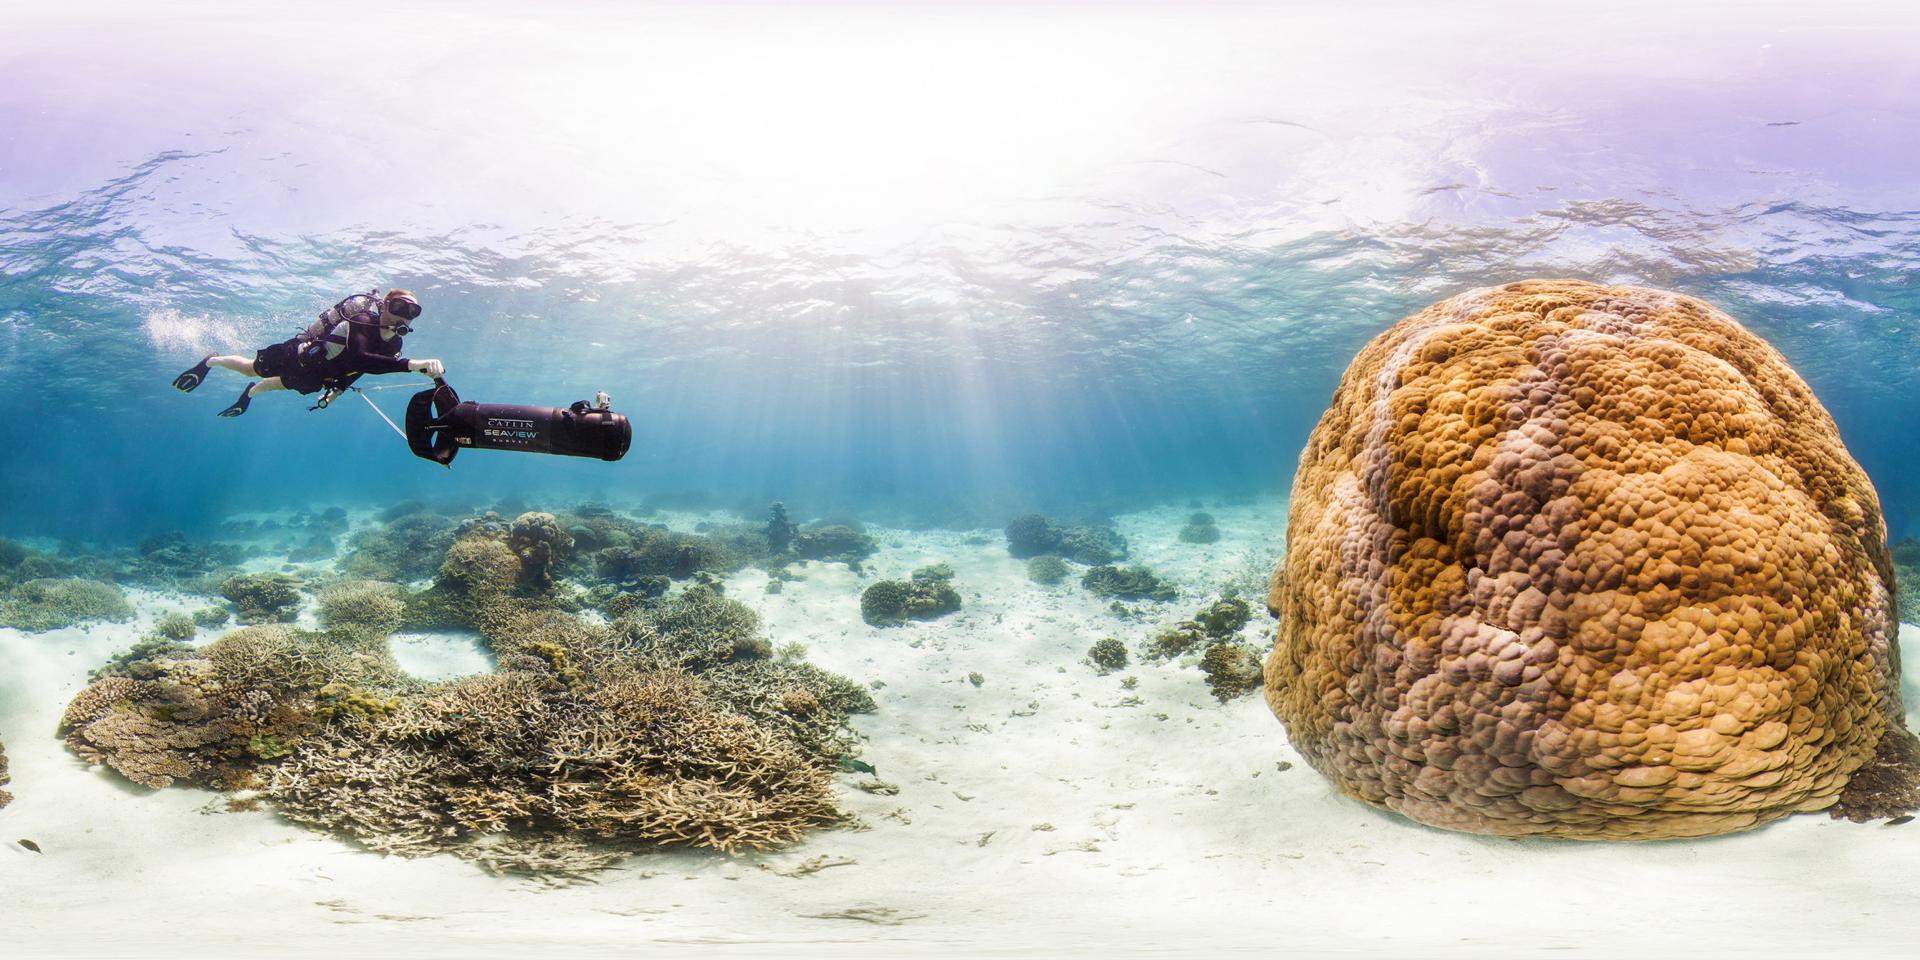 Philippe Cousteau en plongée avec le Catlin Seaview Survey en Australie sur le récif corallien de Wilson Island. © Catlin Seaview Survey